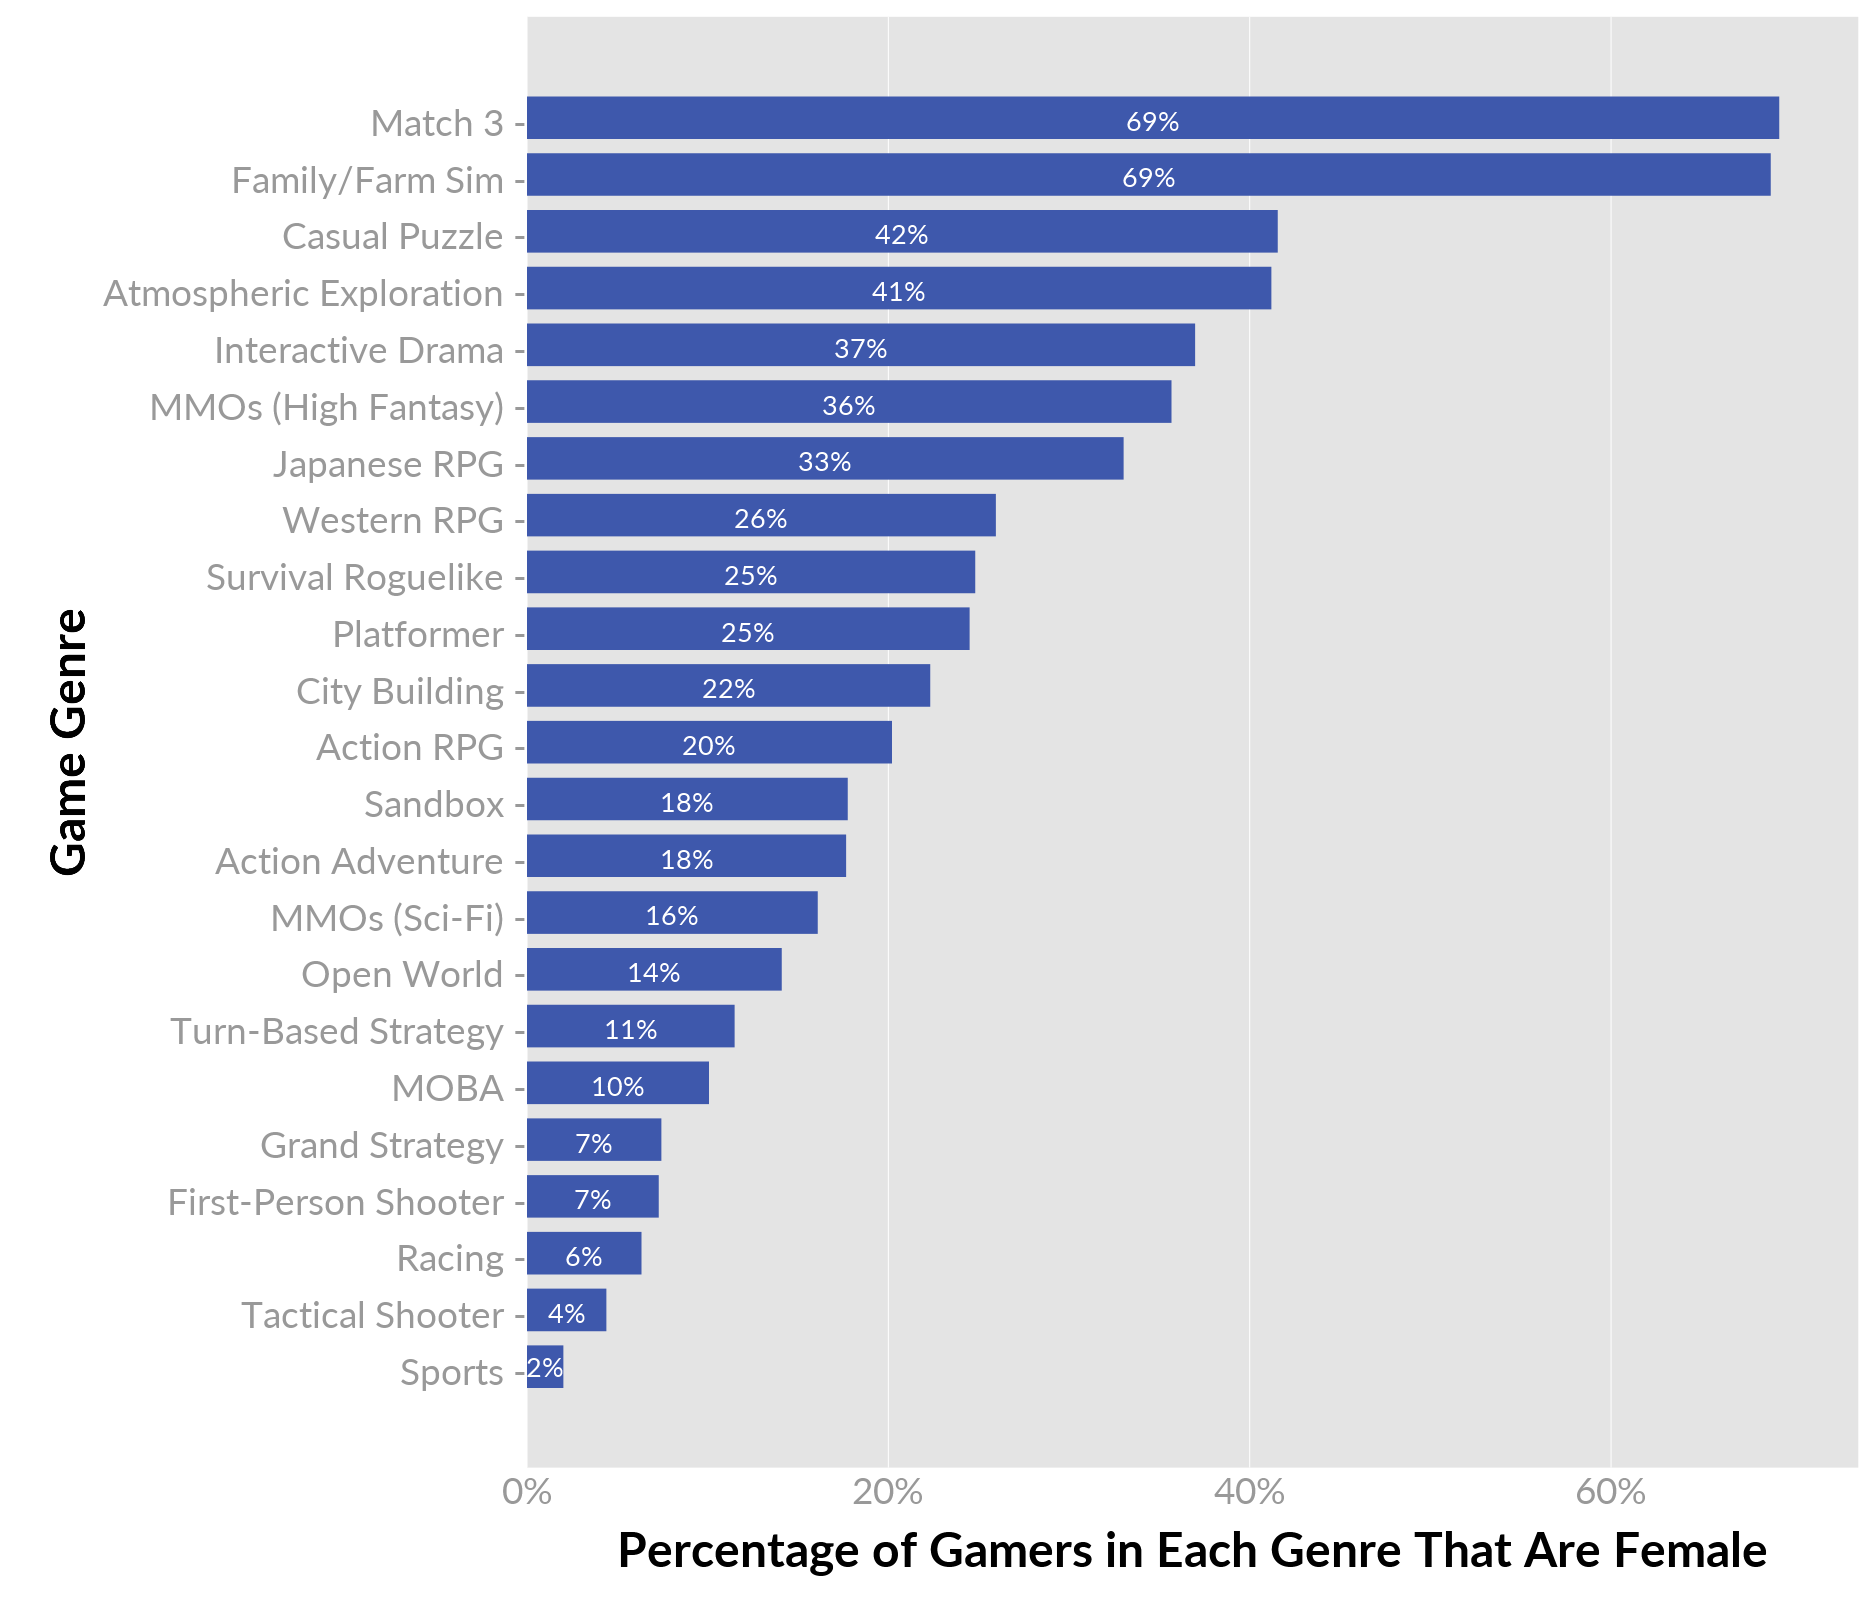 genre-gender-percentages.png